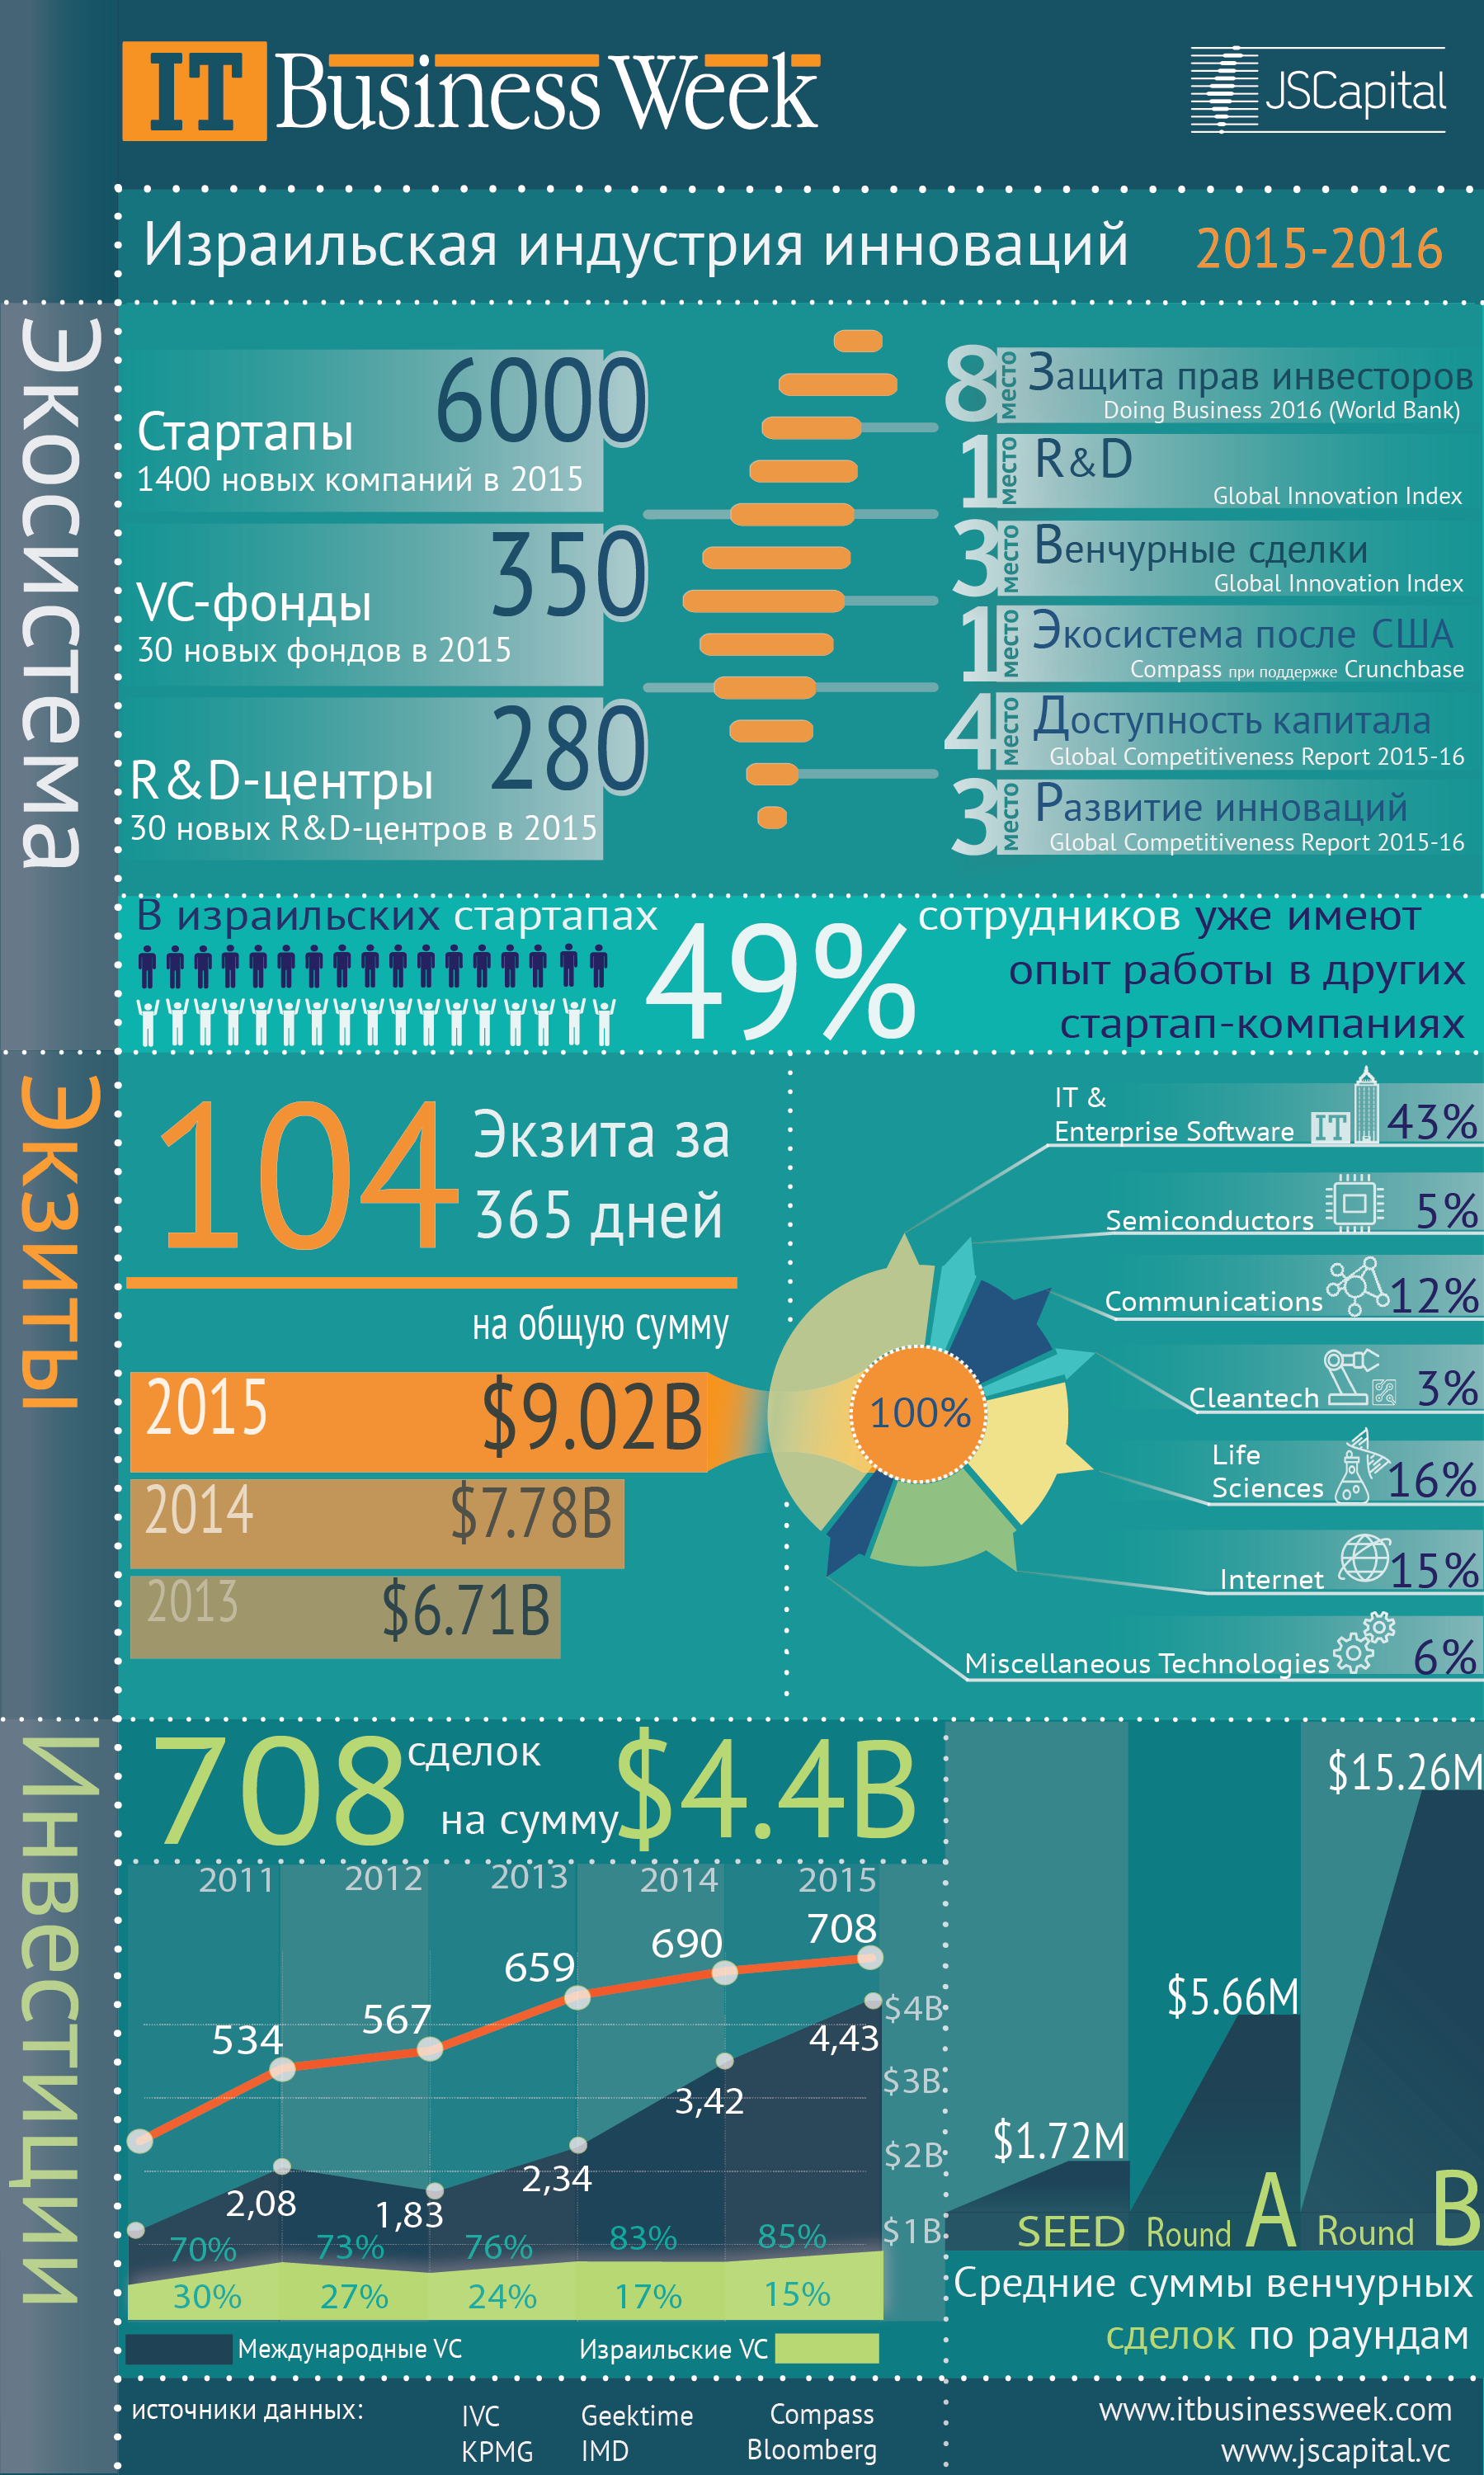 Израильская индустрия инноваций 2015-2016 - инфографика JSCapital и IT Business Week